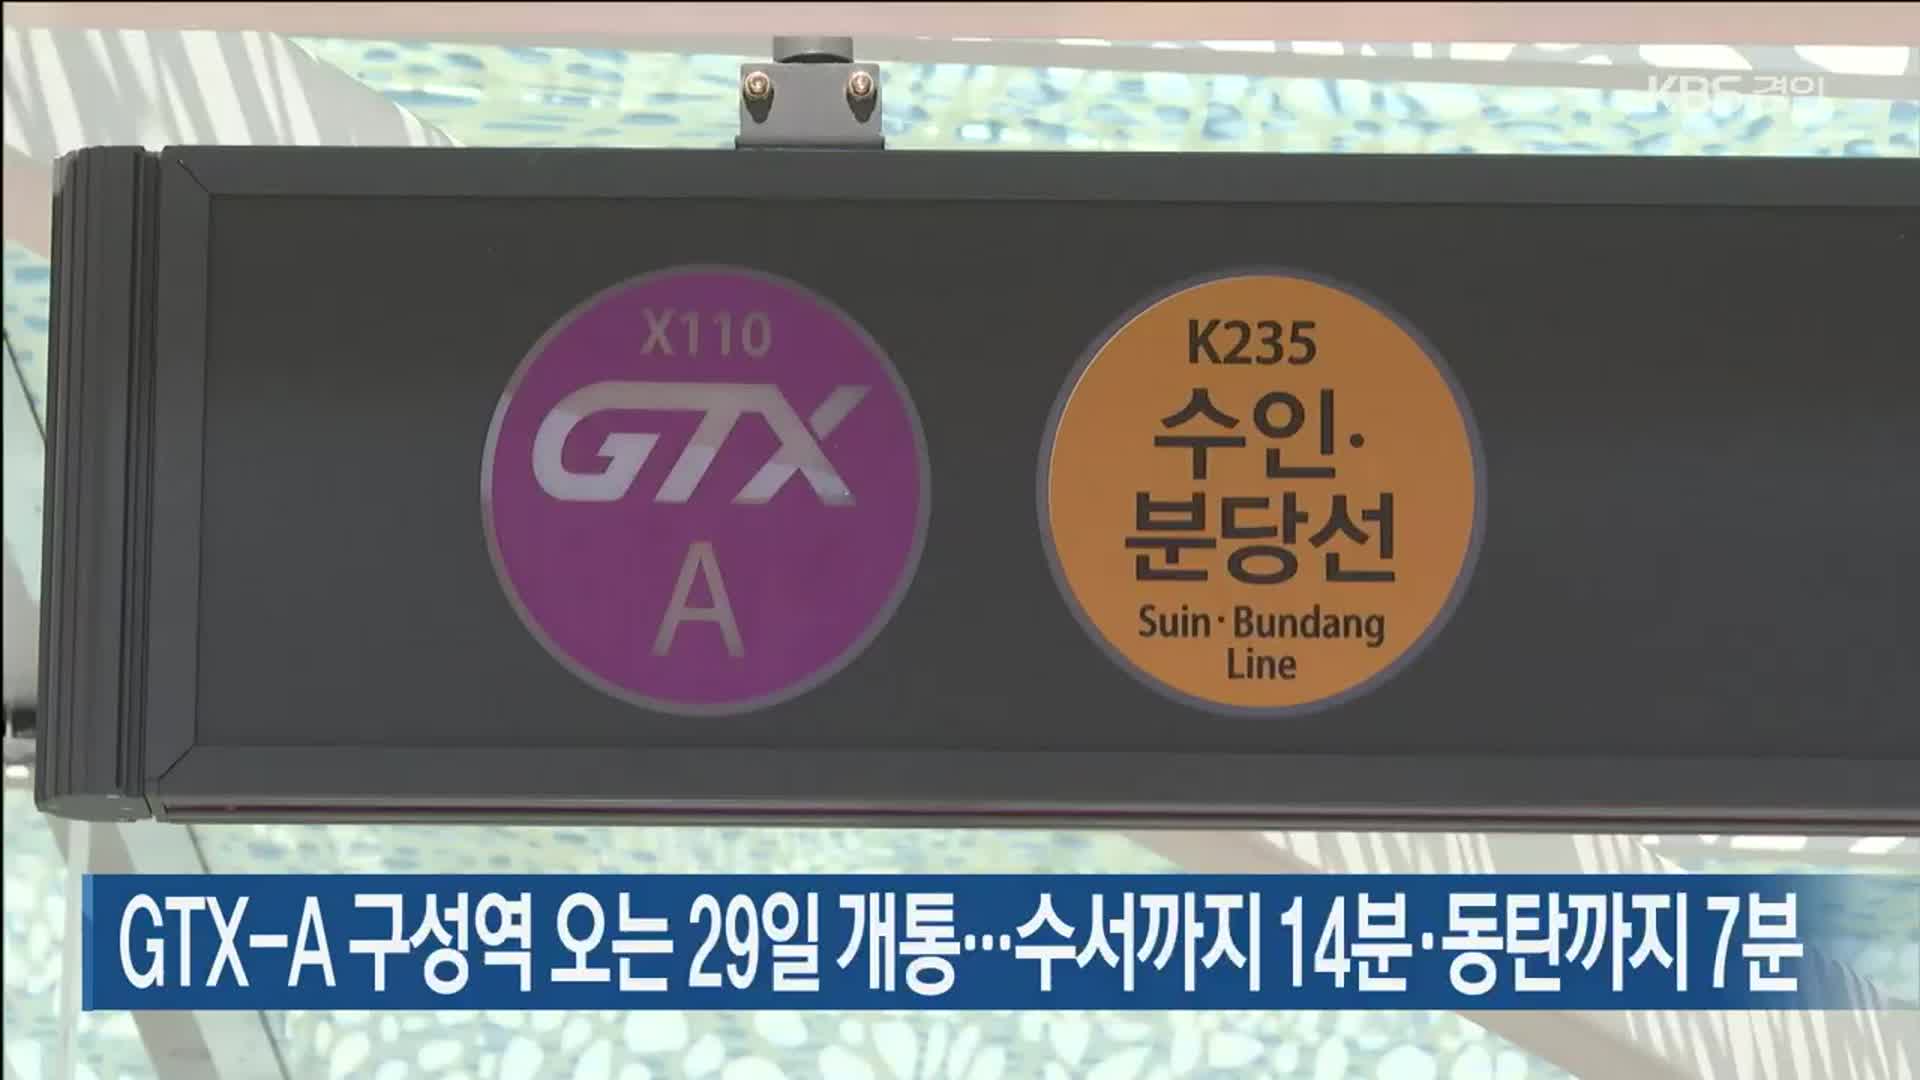 GTX-A 구성역 오는 29일 개통…수서까지 14분·동탄까지 7분